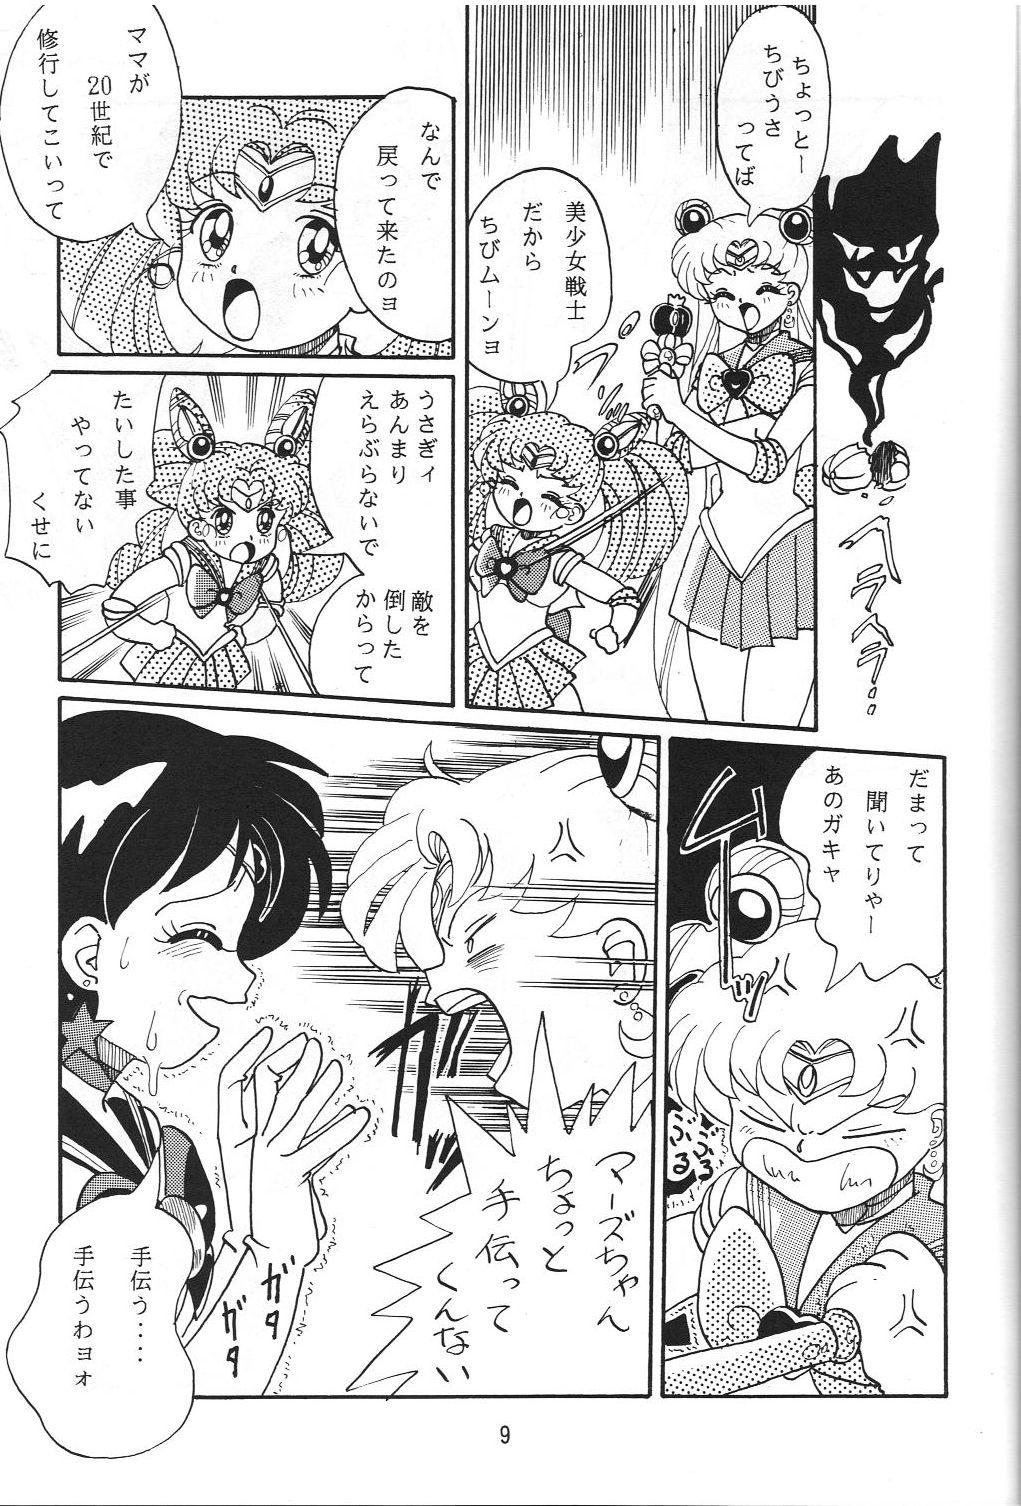 Nice Jiyuu Tamashii - Sailor moon Ah my goddess Tenchi muyo Bj - Page 8